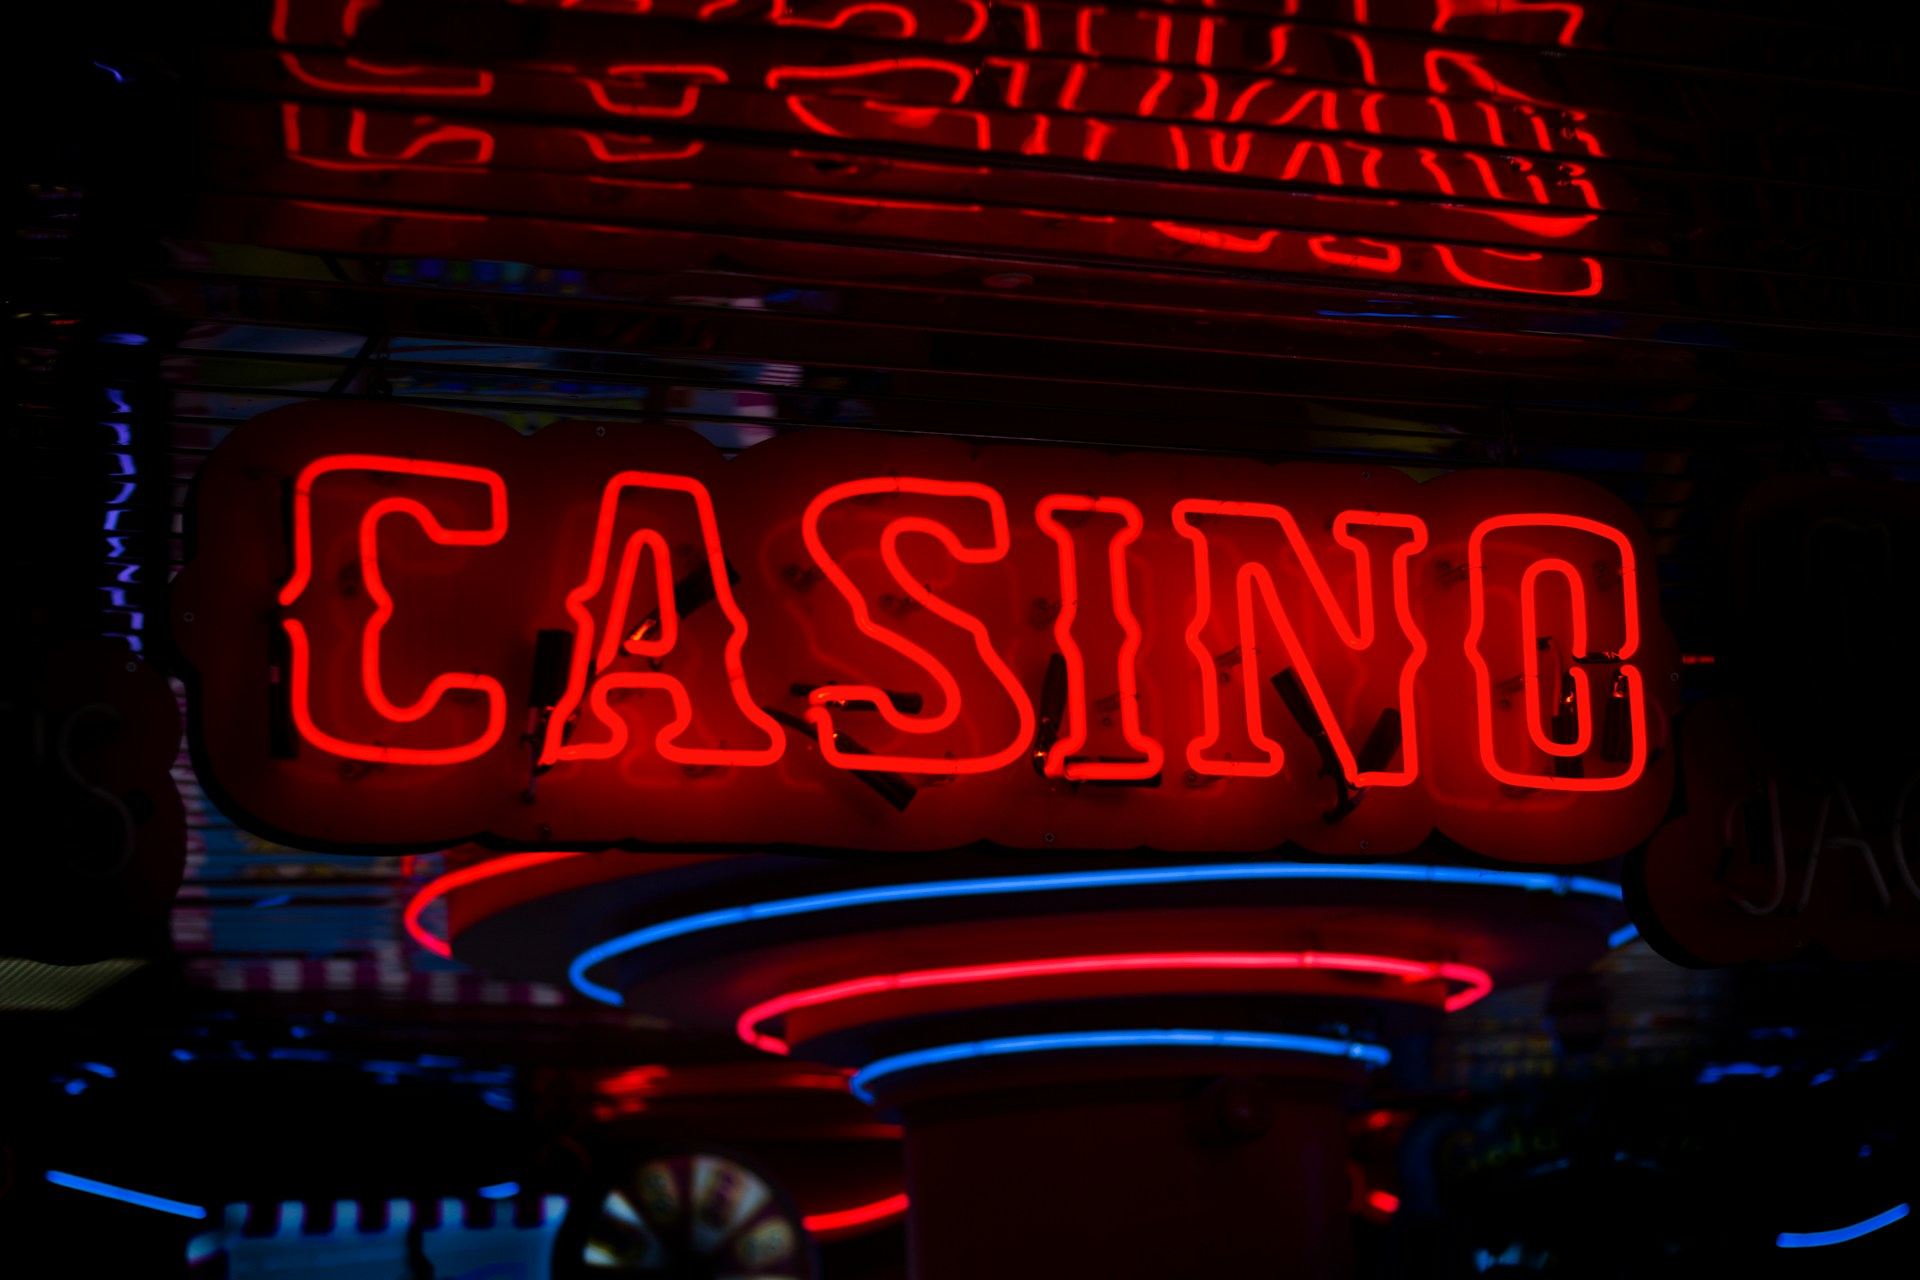 Les jeux de casino en direct : l’avenir du casino en ligne ?